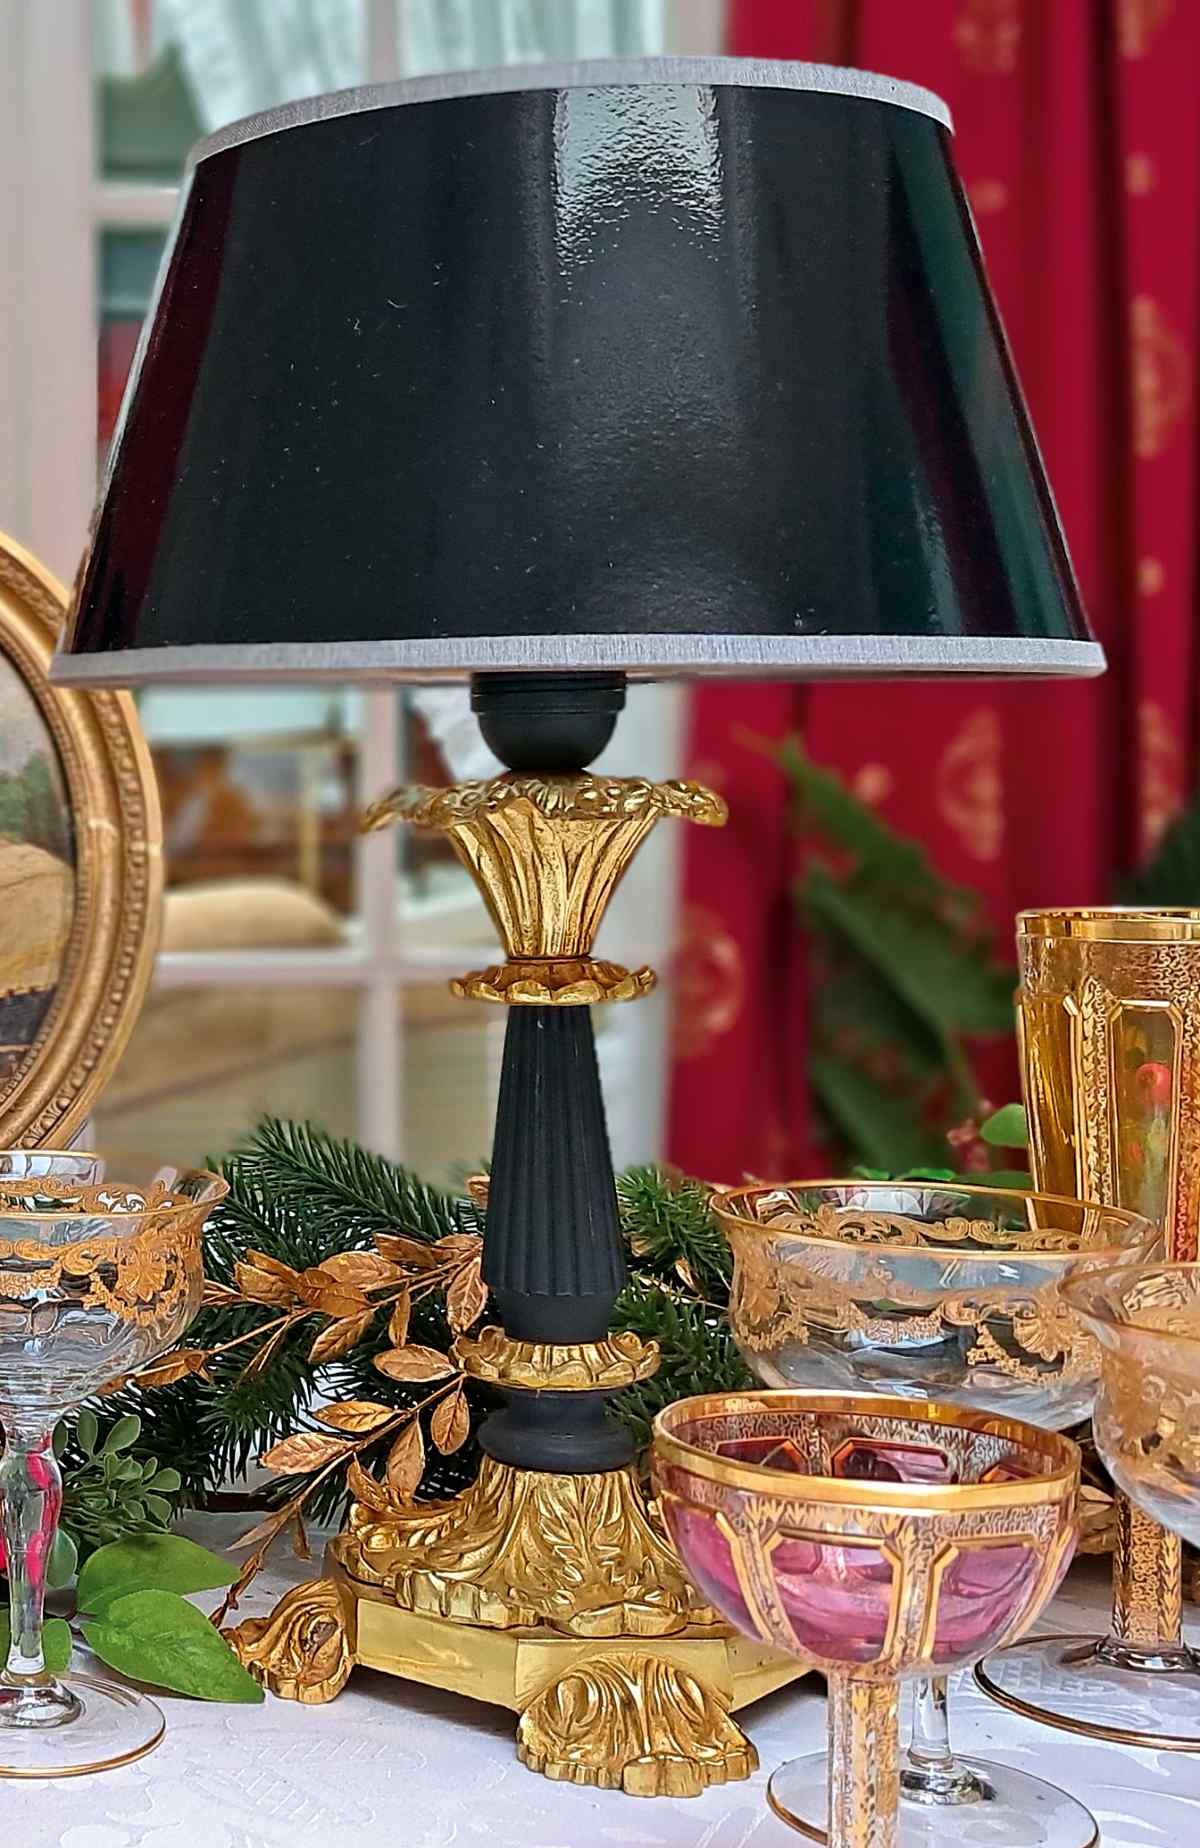 Tischlampe in schwarz und gold, aus Bronze und Holz, stabil und hochwertig, Secondhand Ware, Frontalansicht.